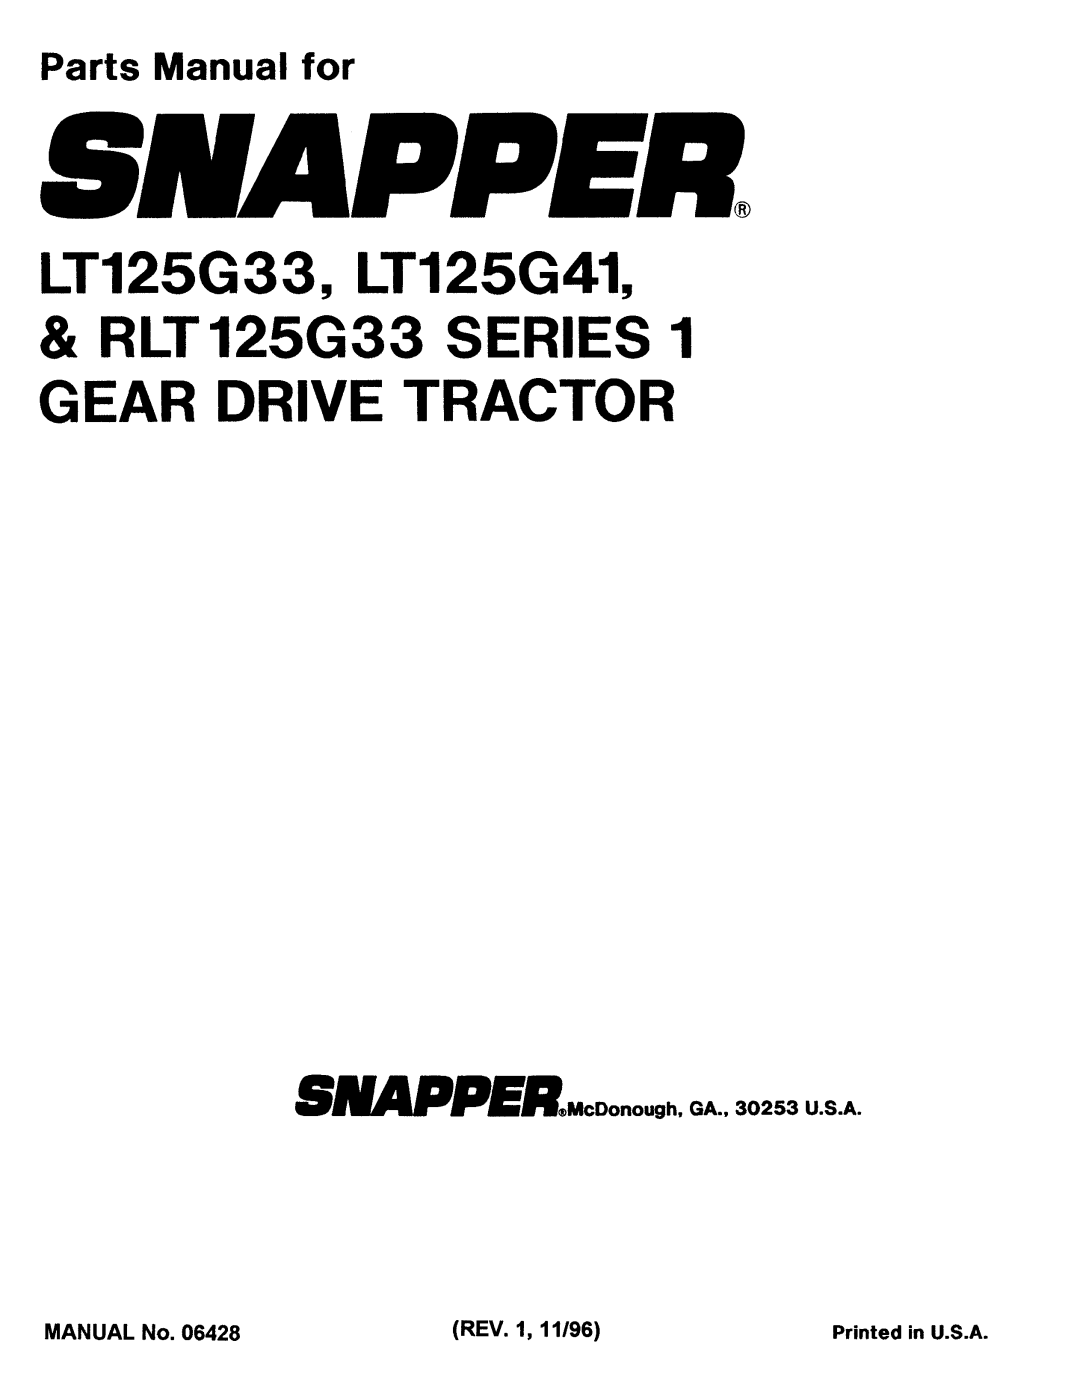 Snapper LT125G33, LT125G41, RLT 125G33 manual 